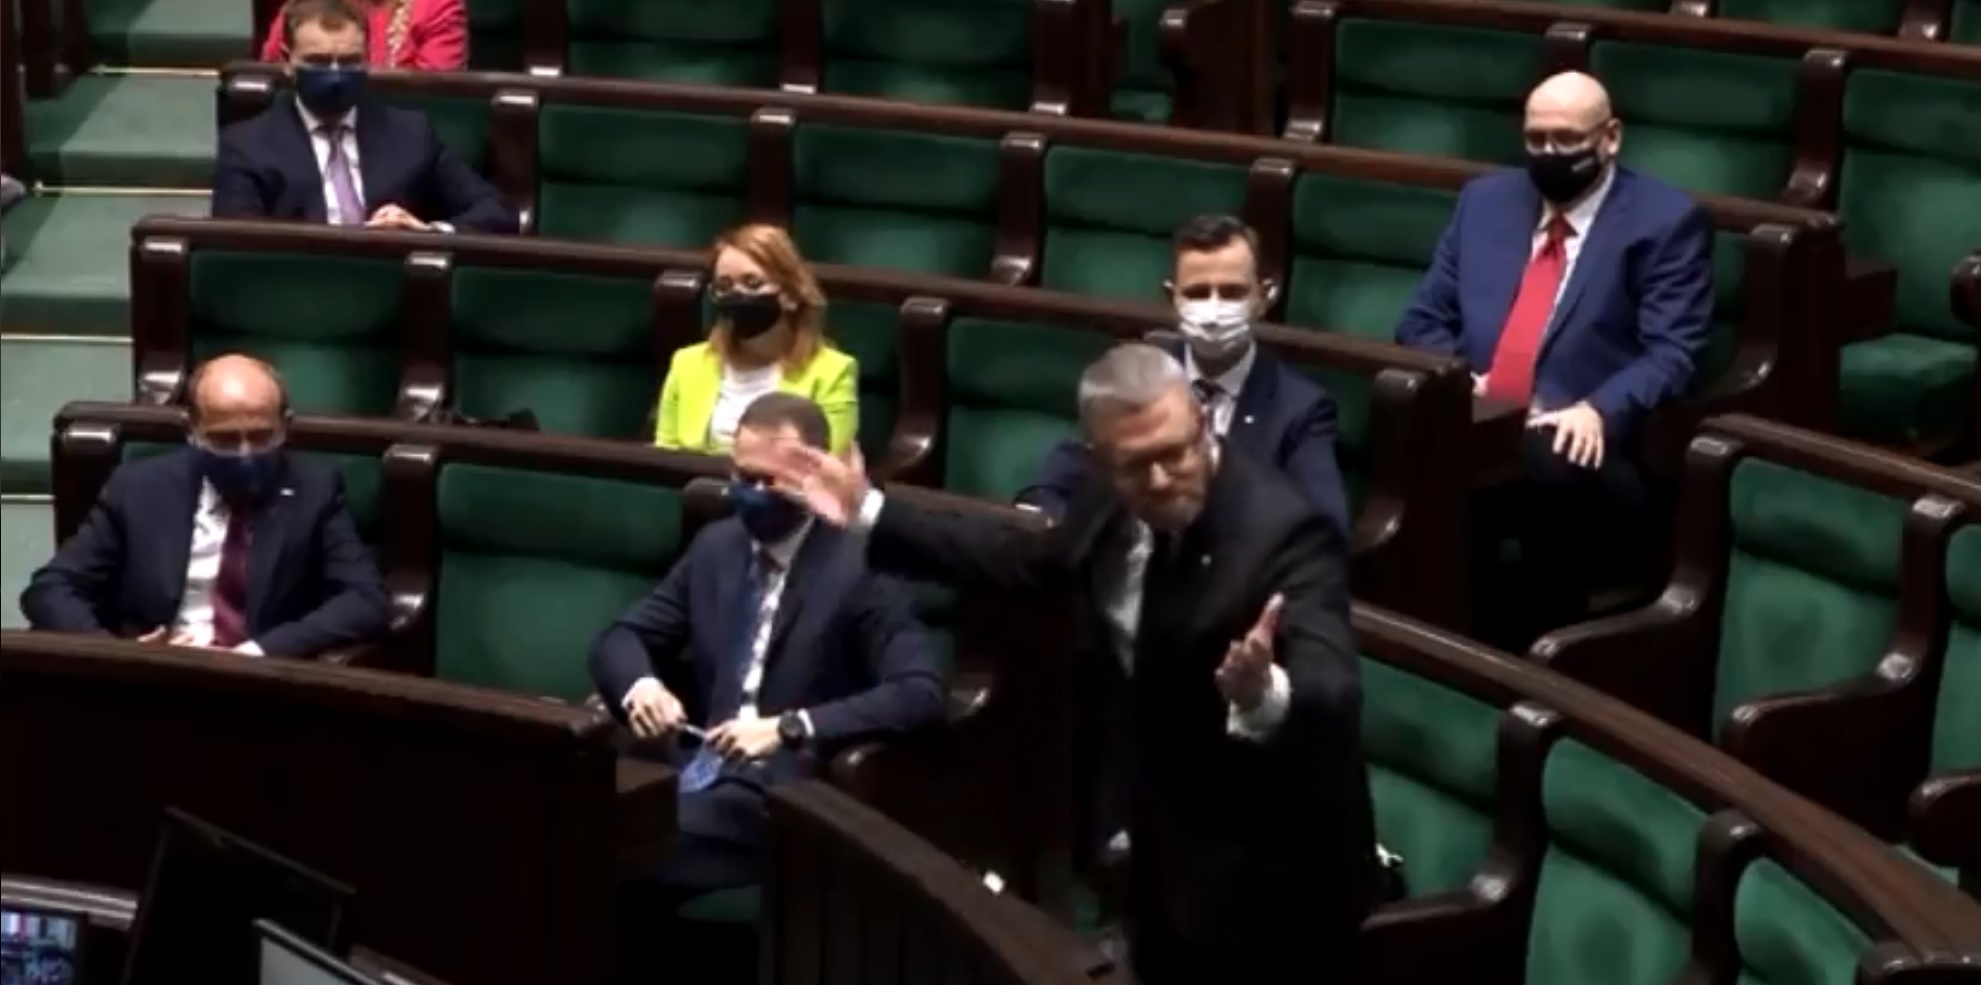 propolski.pl: [video] Awantura w Sejmie. Braun wykluczony z obrad i zmuszony do opuszczenia sali plenarnej